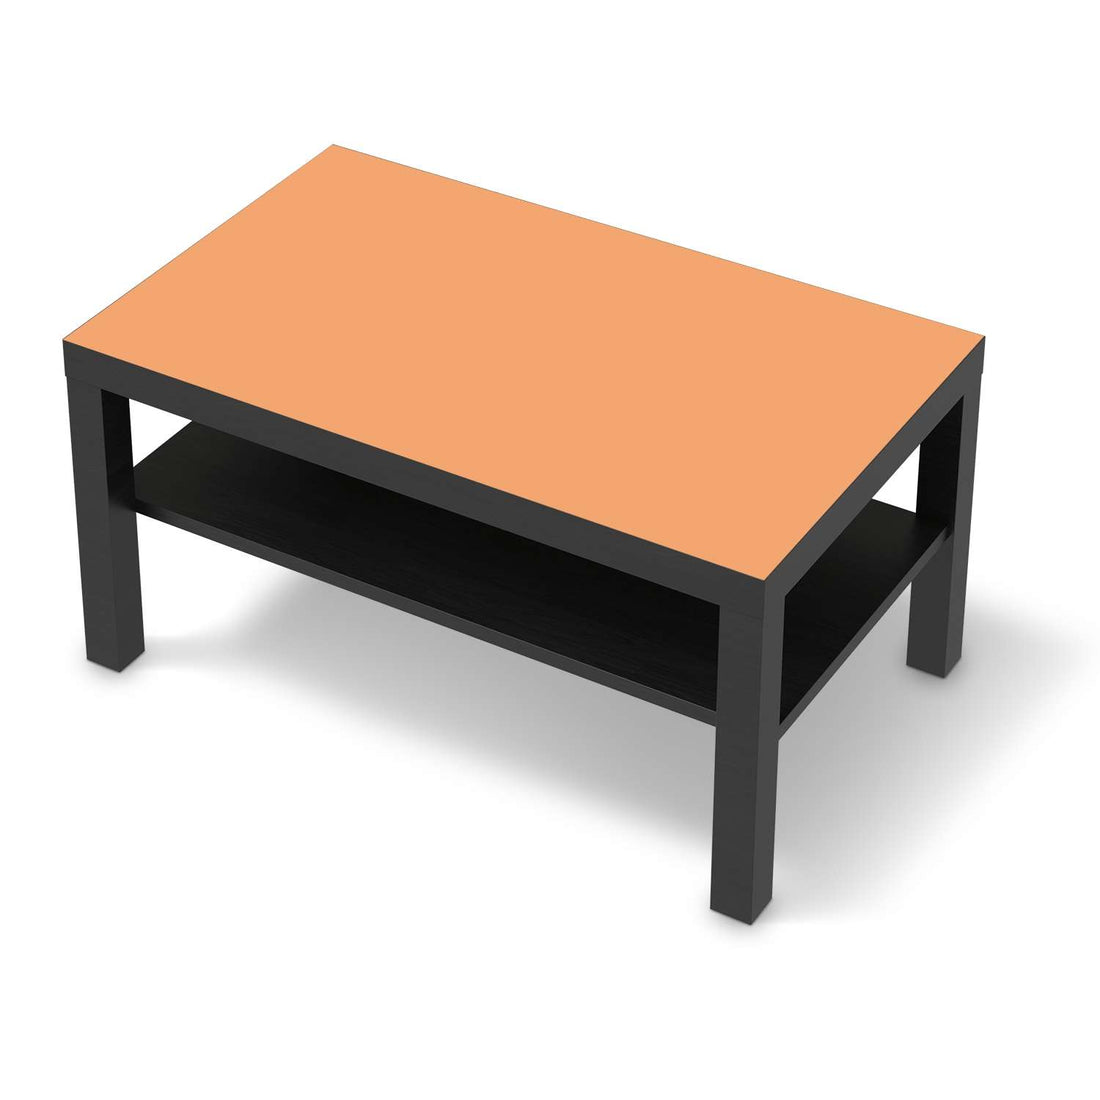 Möbelfolie Orange Light - IKEA Lack Tisch 90x55 cm - schwarz